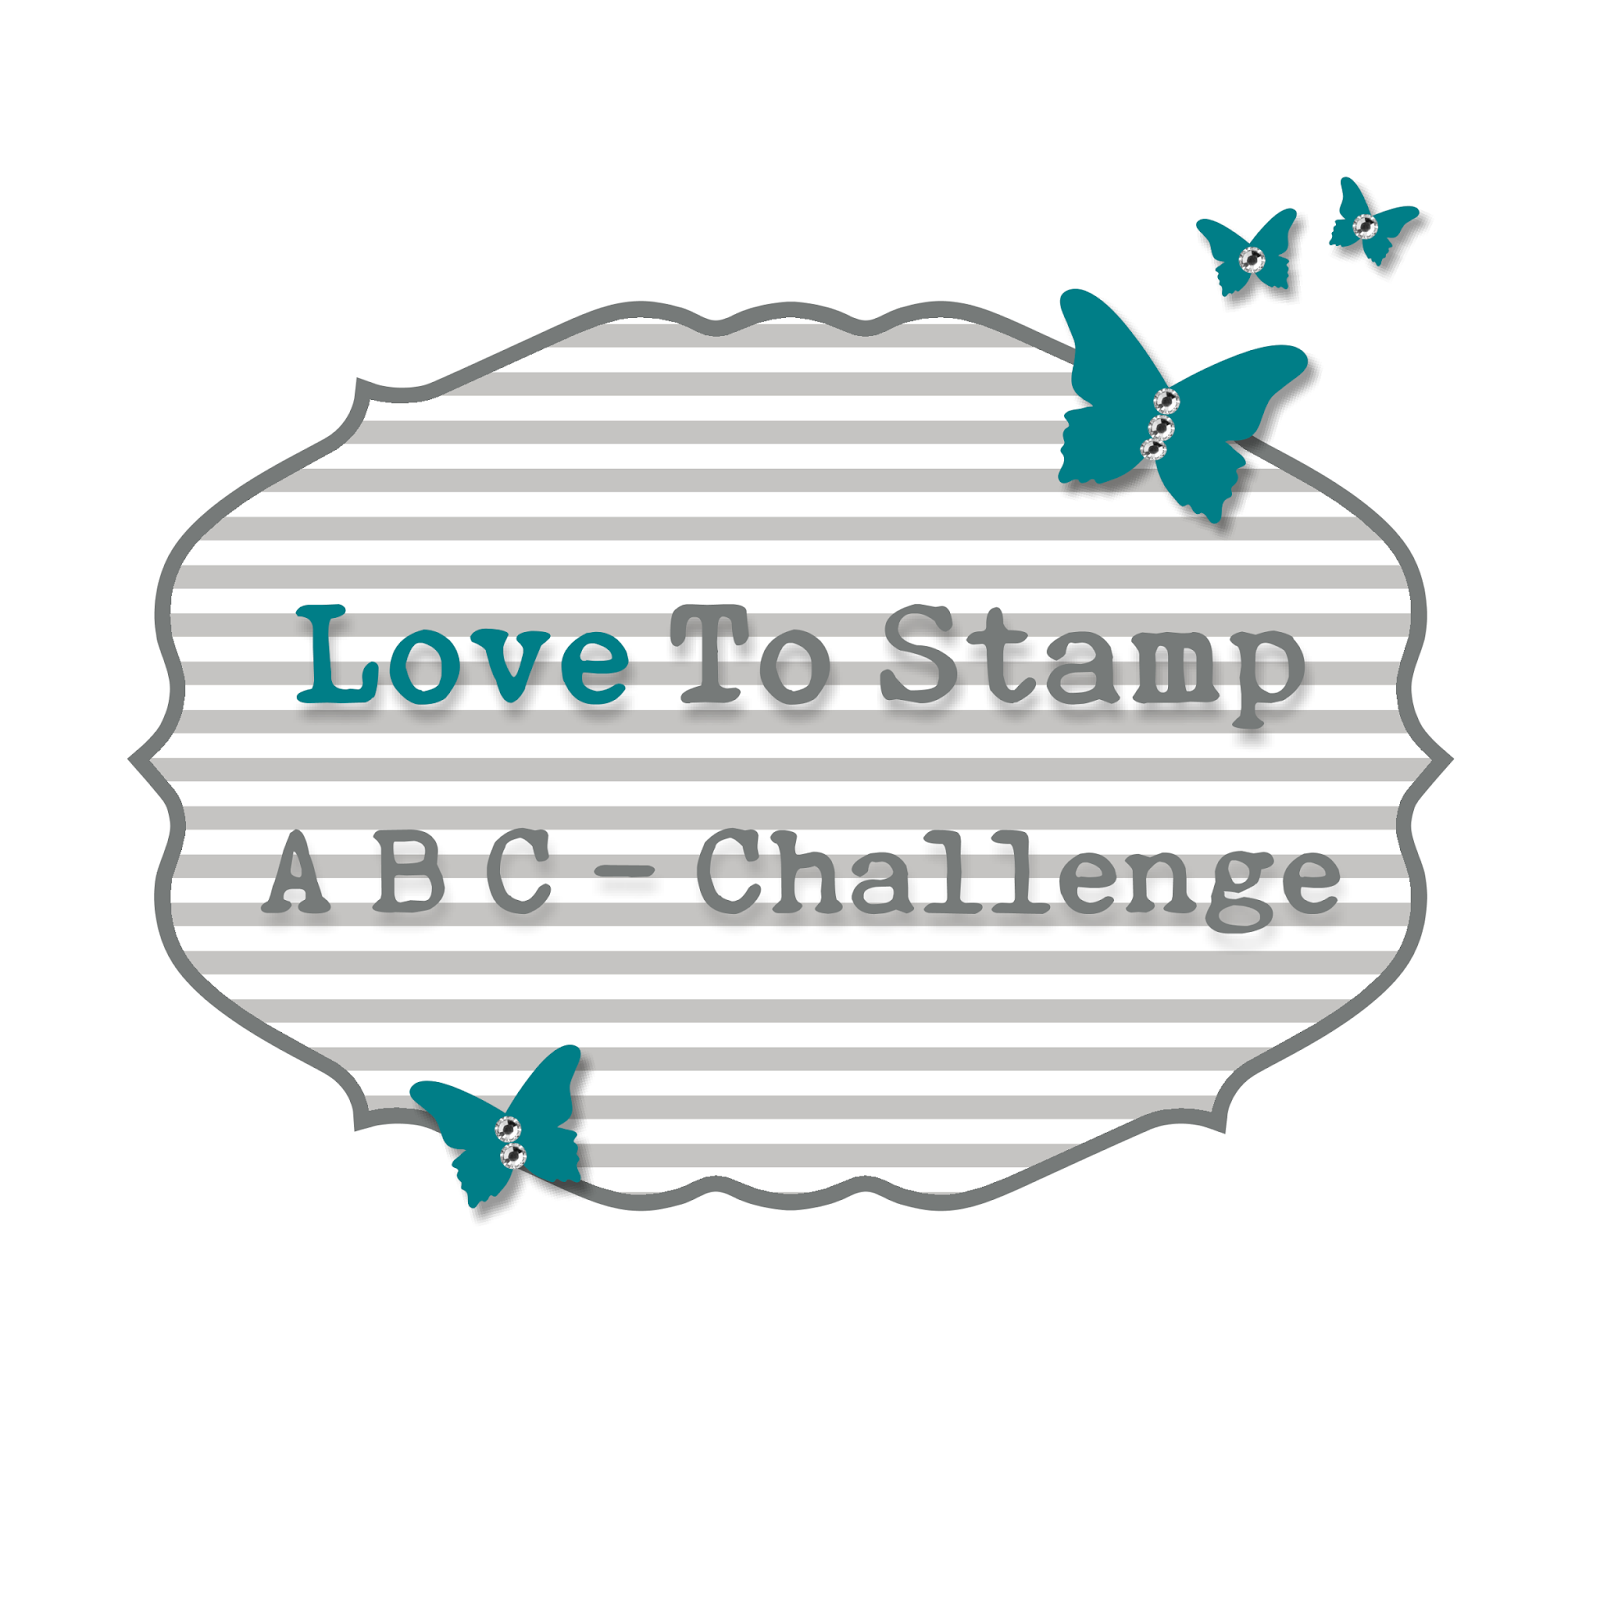 ABC - challenge